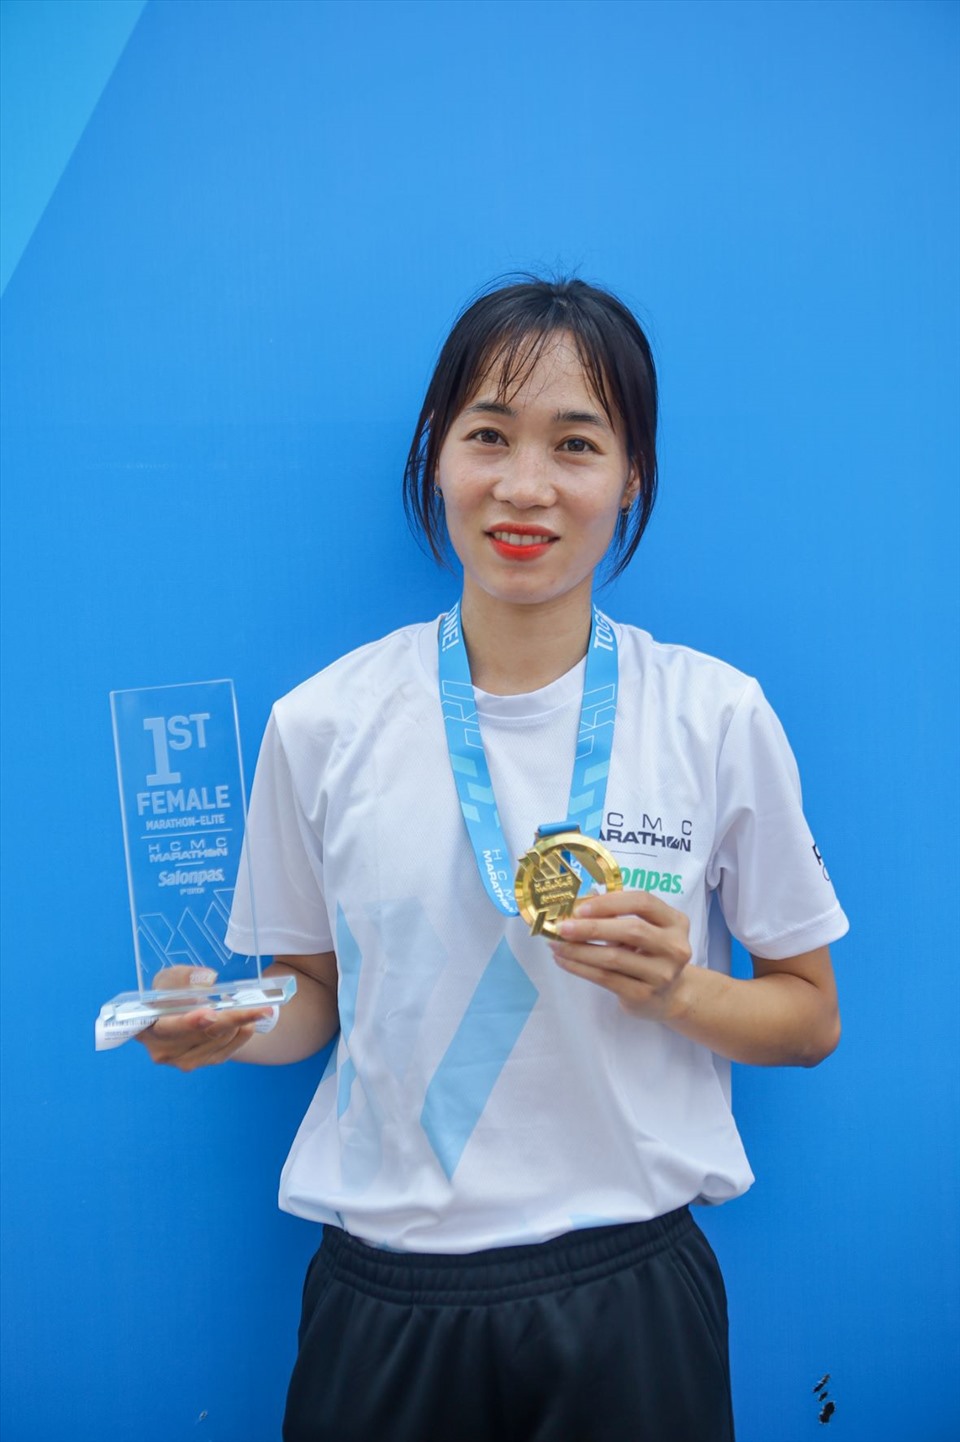 4 vận động viên nam, nữ về nhất ở nội dung marathon (42,195km) nhận huy chương mạ vàng từ ban tổ chức. Đây là giải marathon duy nhất tại Việt Nam có phần thưởng đặc biệt này cho các vận động viên.